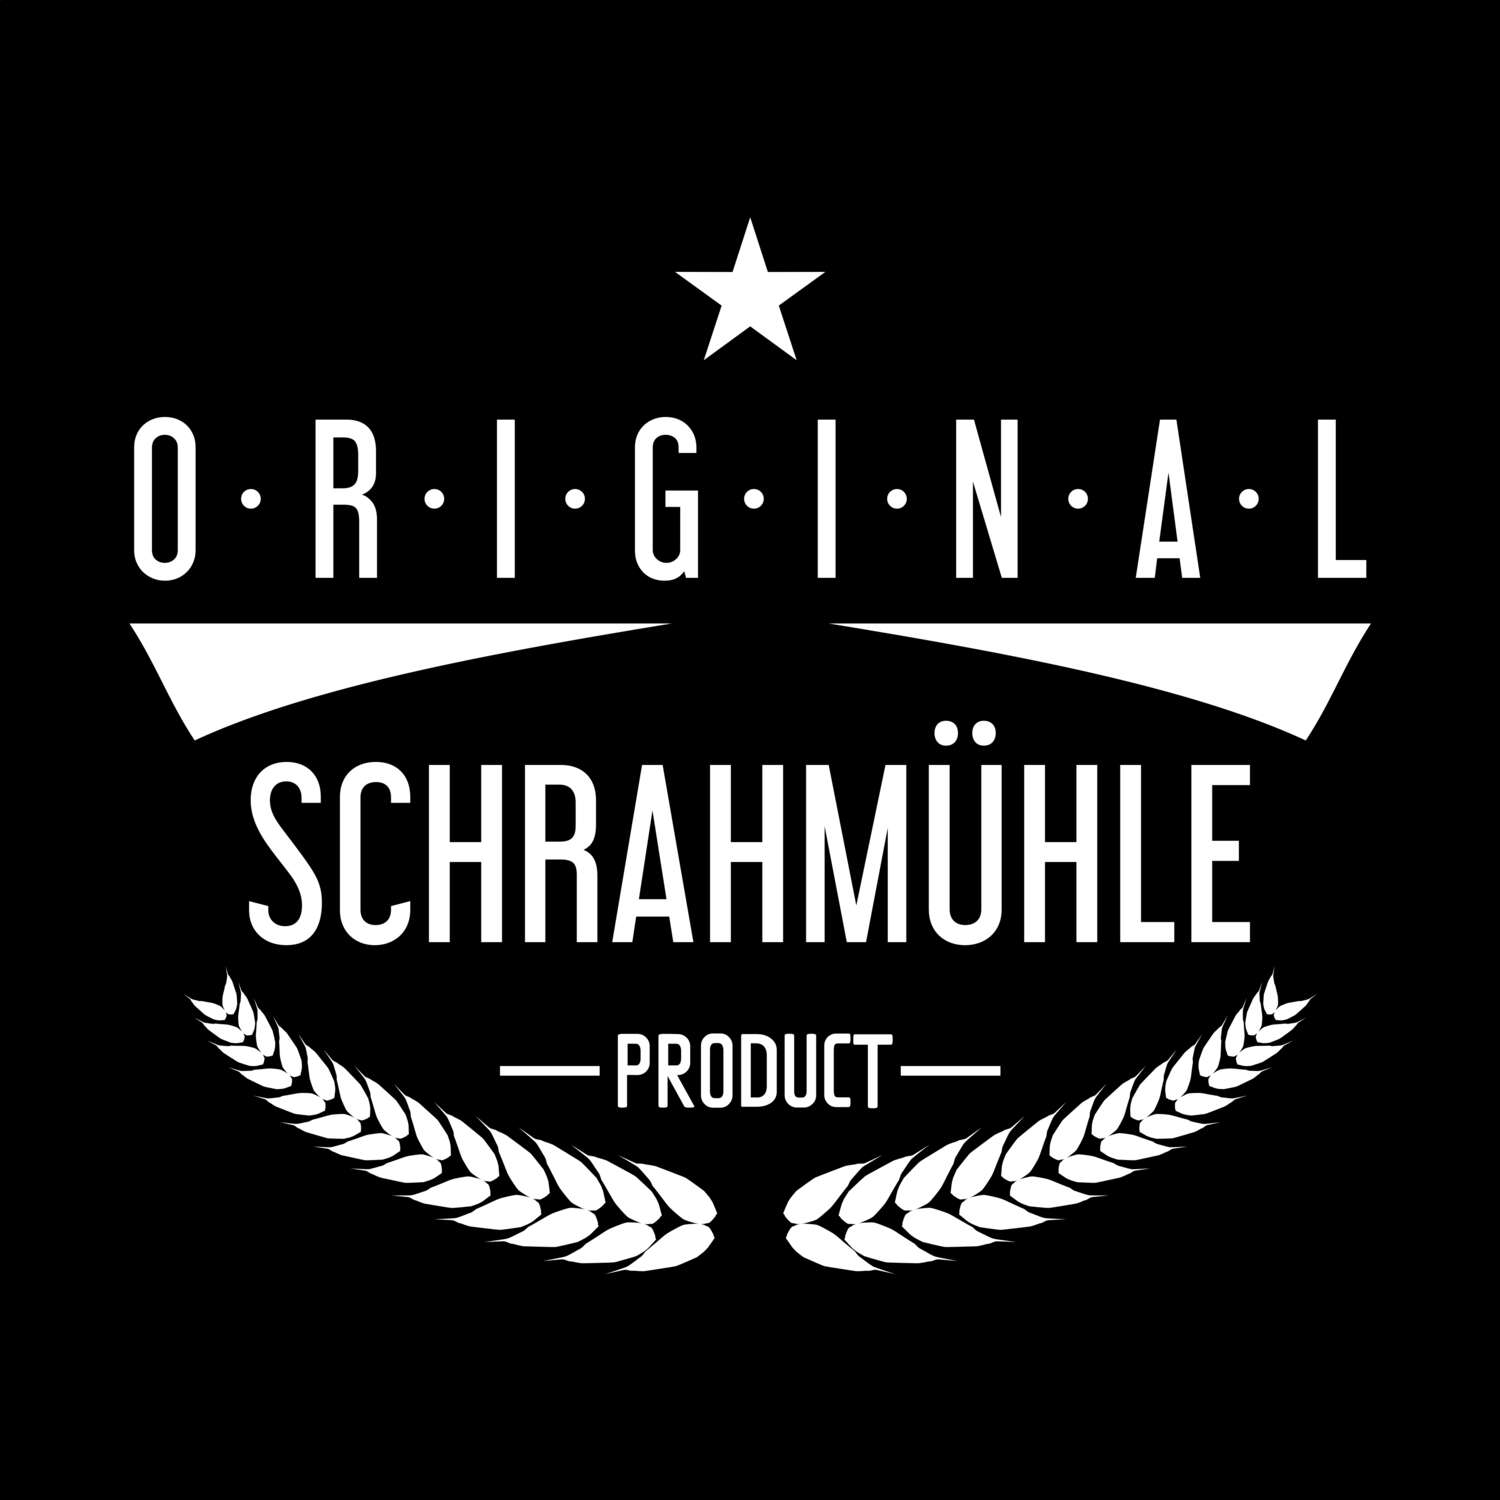 Schrahmühle T-Shirt »Original Product«